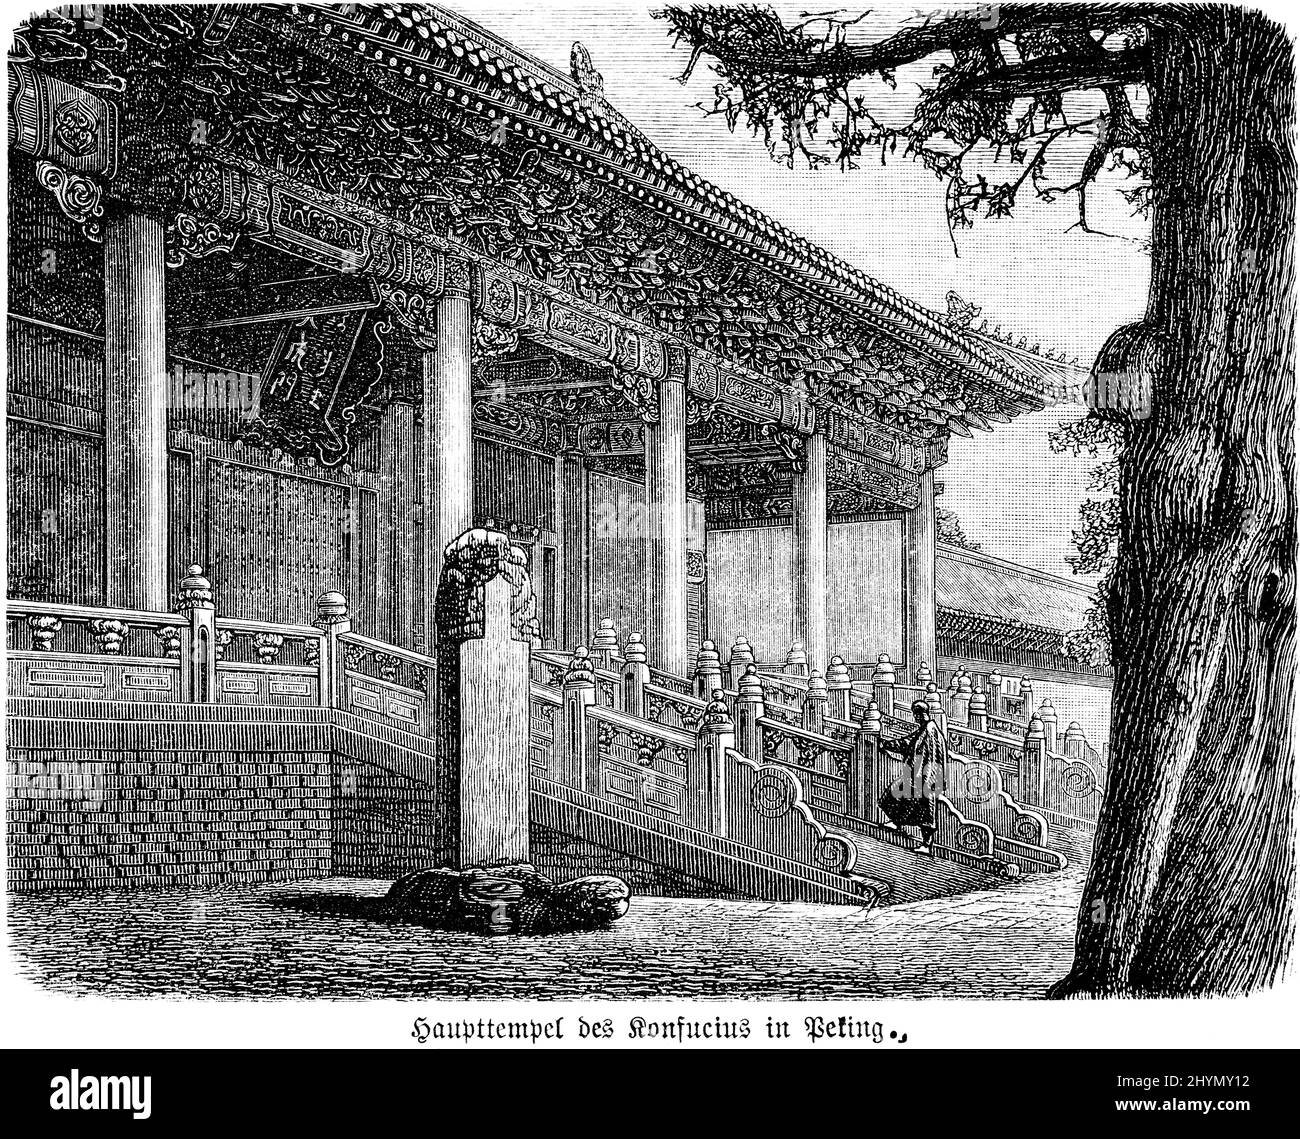 Complexe du Temple, temple principal, Confucius, religion, architecture, Colonnes, arbre, illustration historique 1885, Beijing, Chine Banque D'Images